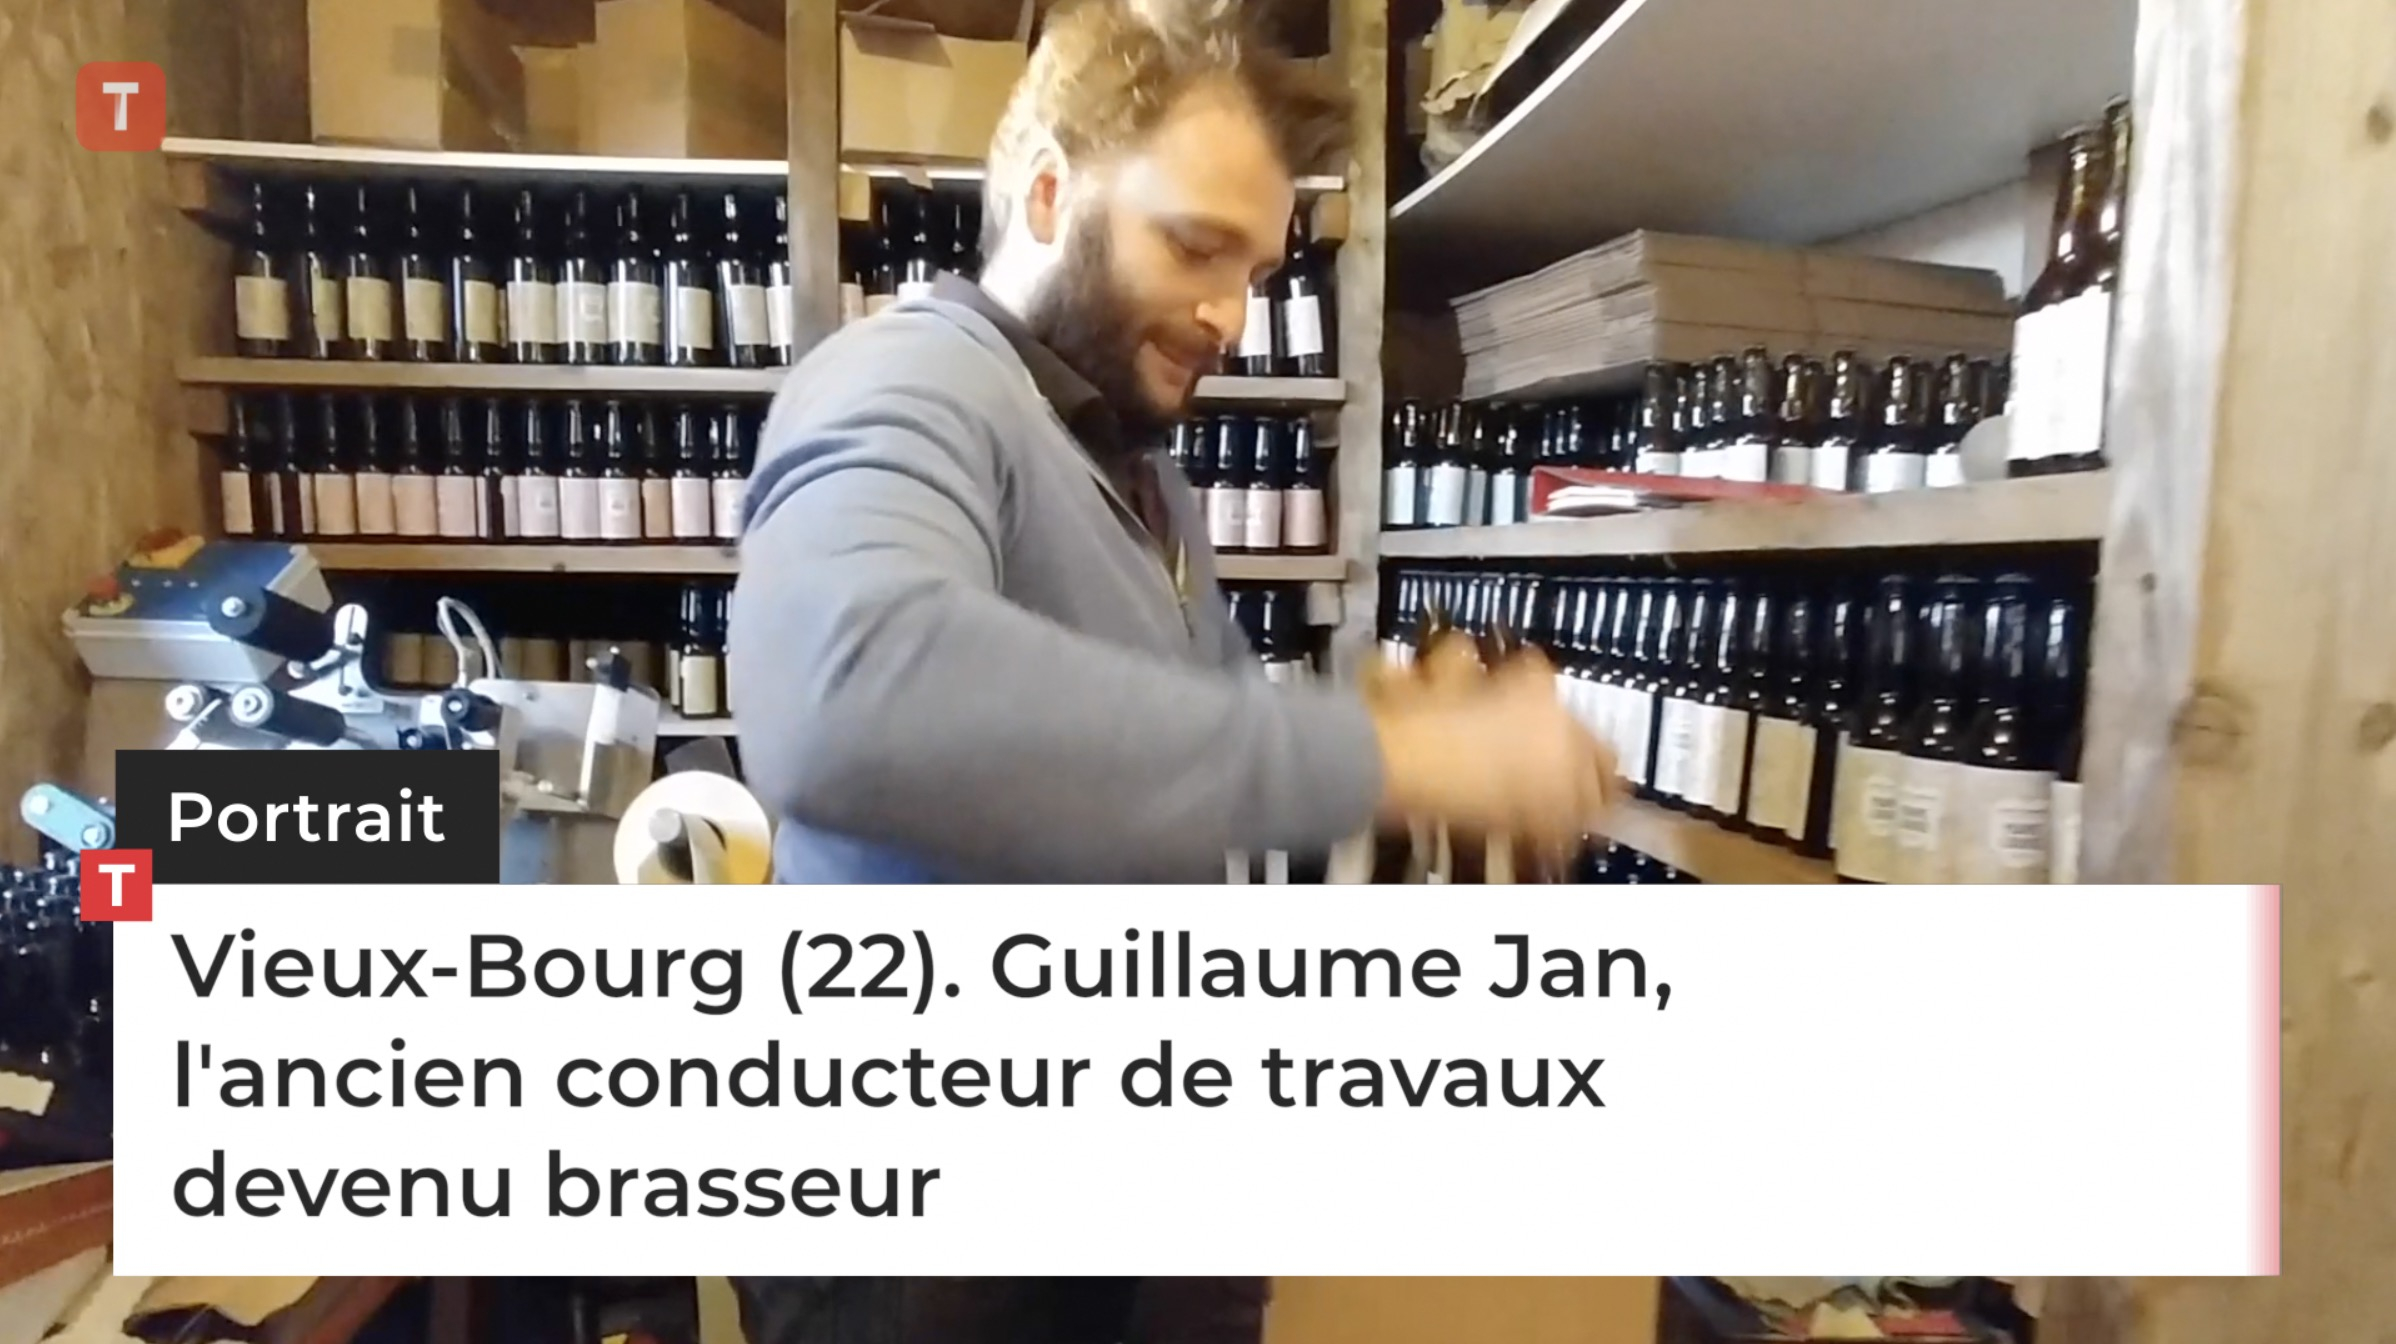 Vieux-Bourg (22). Guillaume Jan, l'ancien conducteur de travaux devenu brasseur (Le Télégramme)